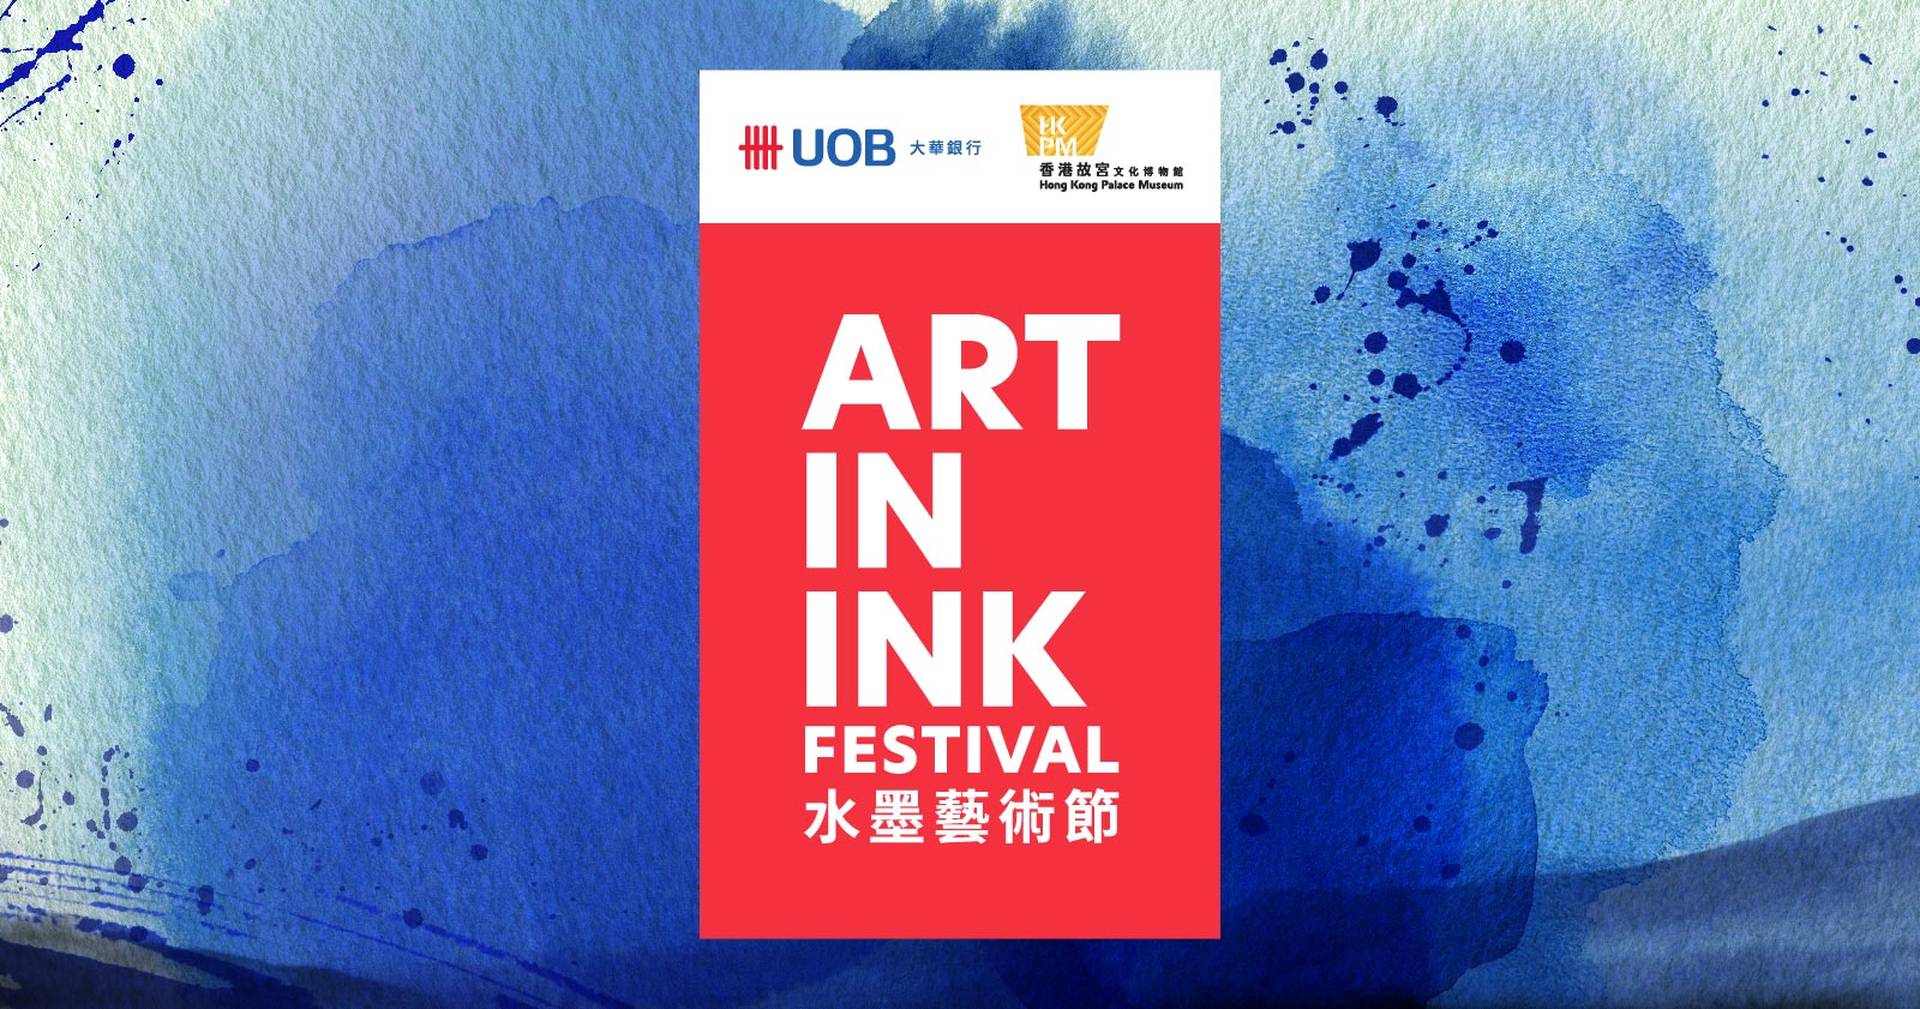 大華銀行與香港故宮文化博物館聯合呈獻 首屆水墨藝術節